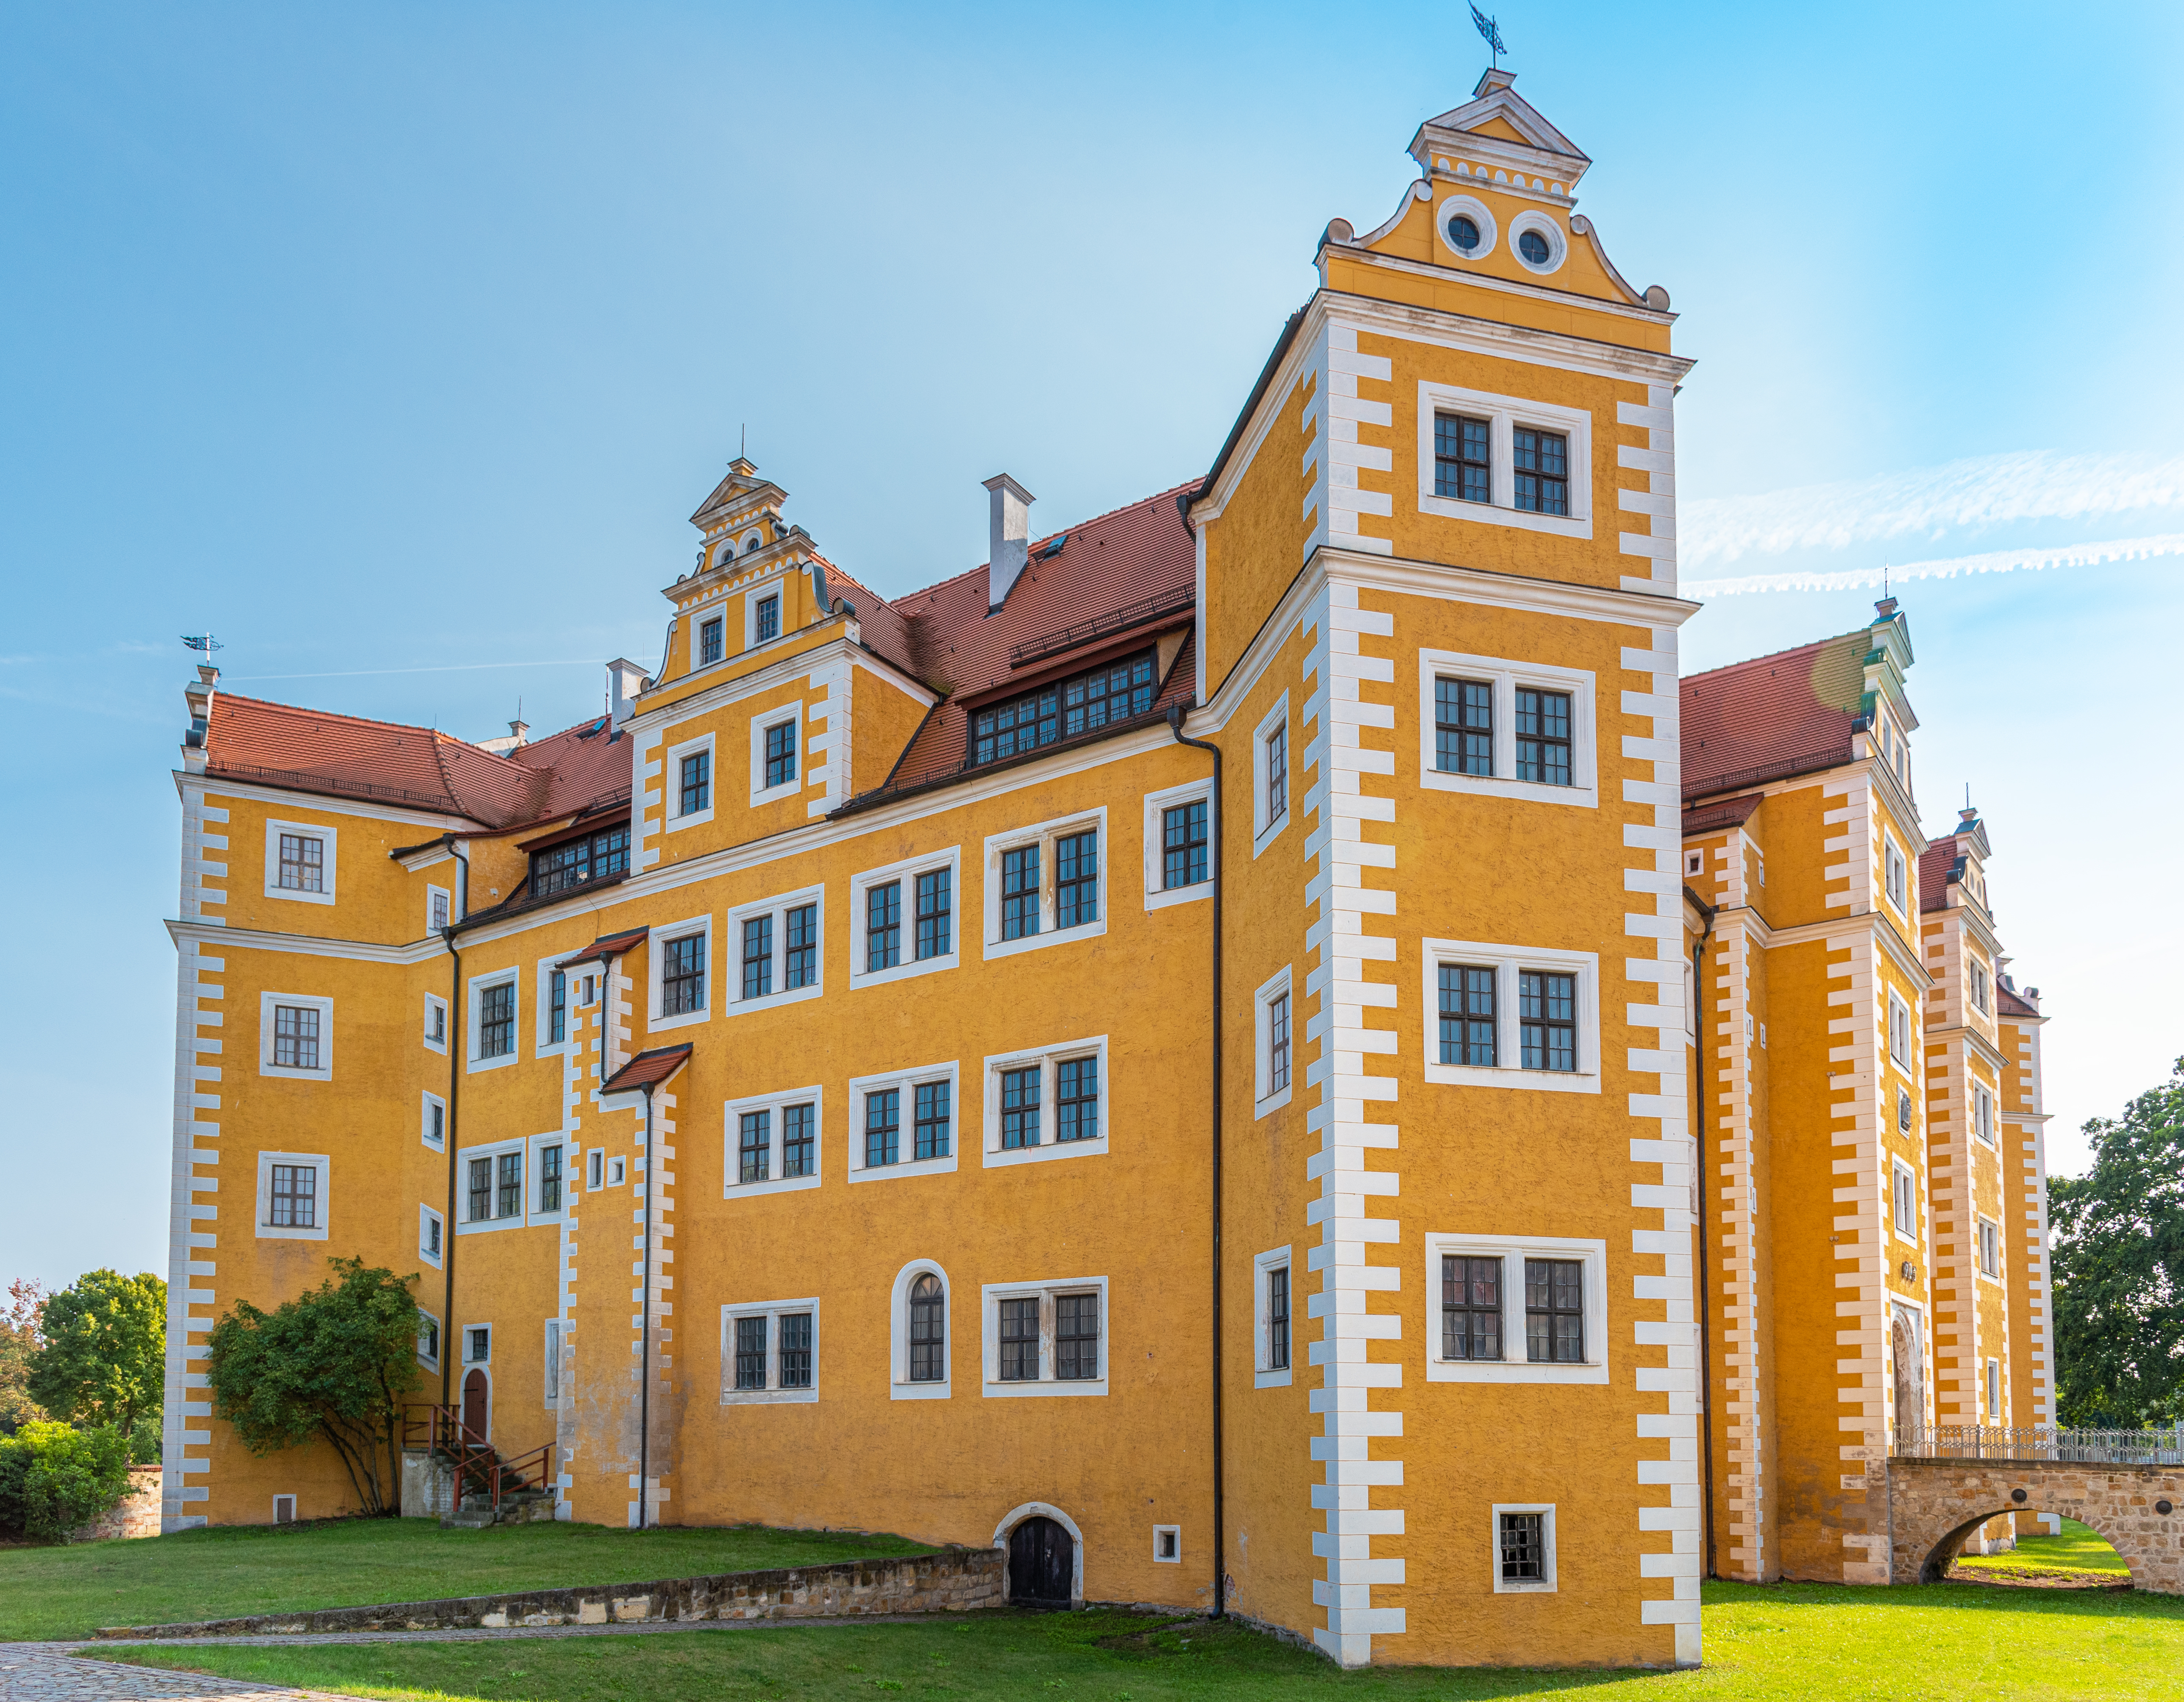 Schloss Annaburg